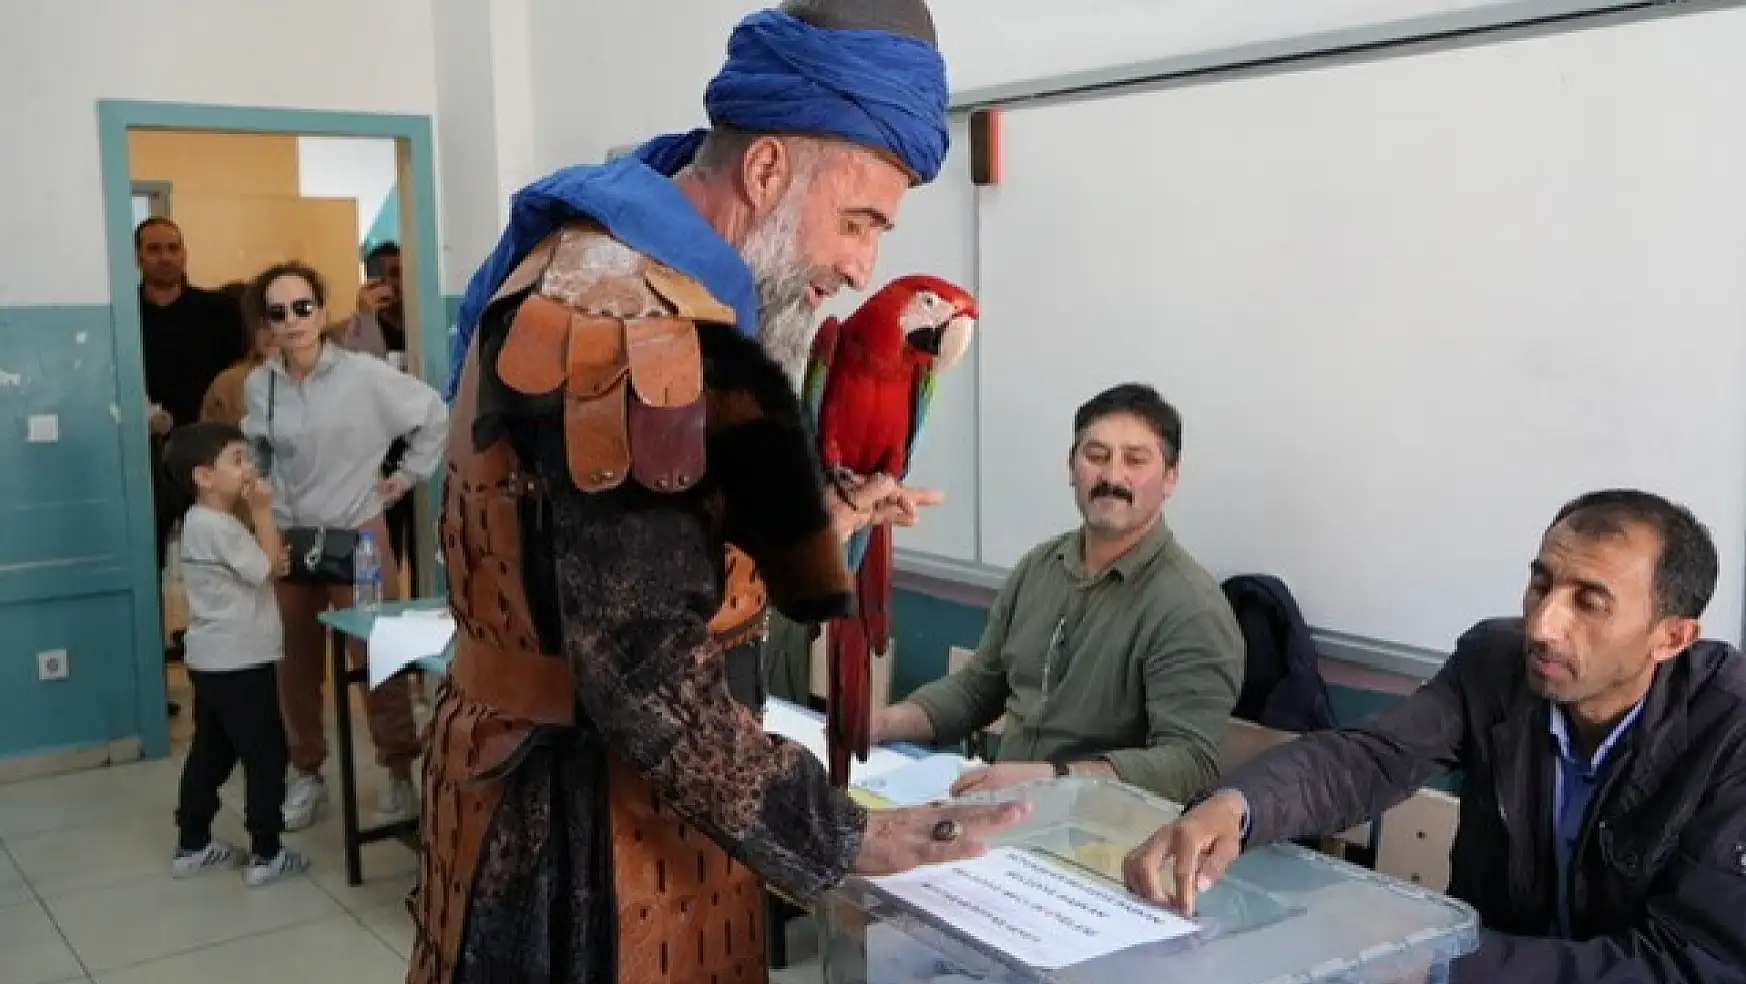 Papağanıyla oy kullanmaya gelen vatandaş ilgi odağı oldu